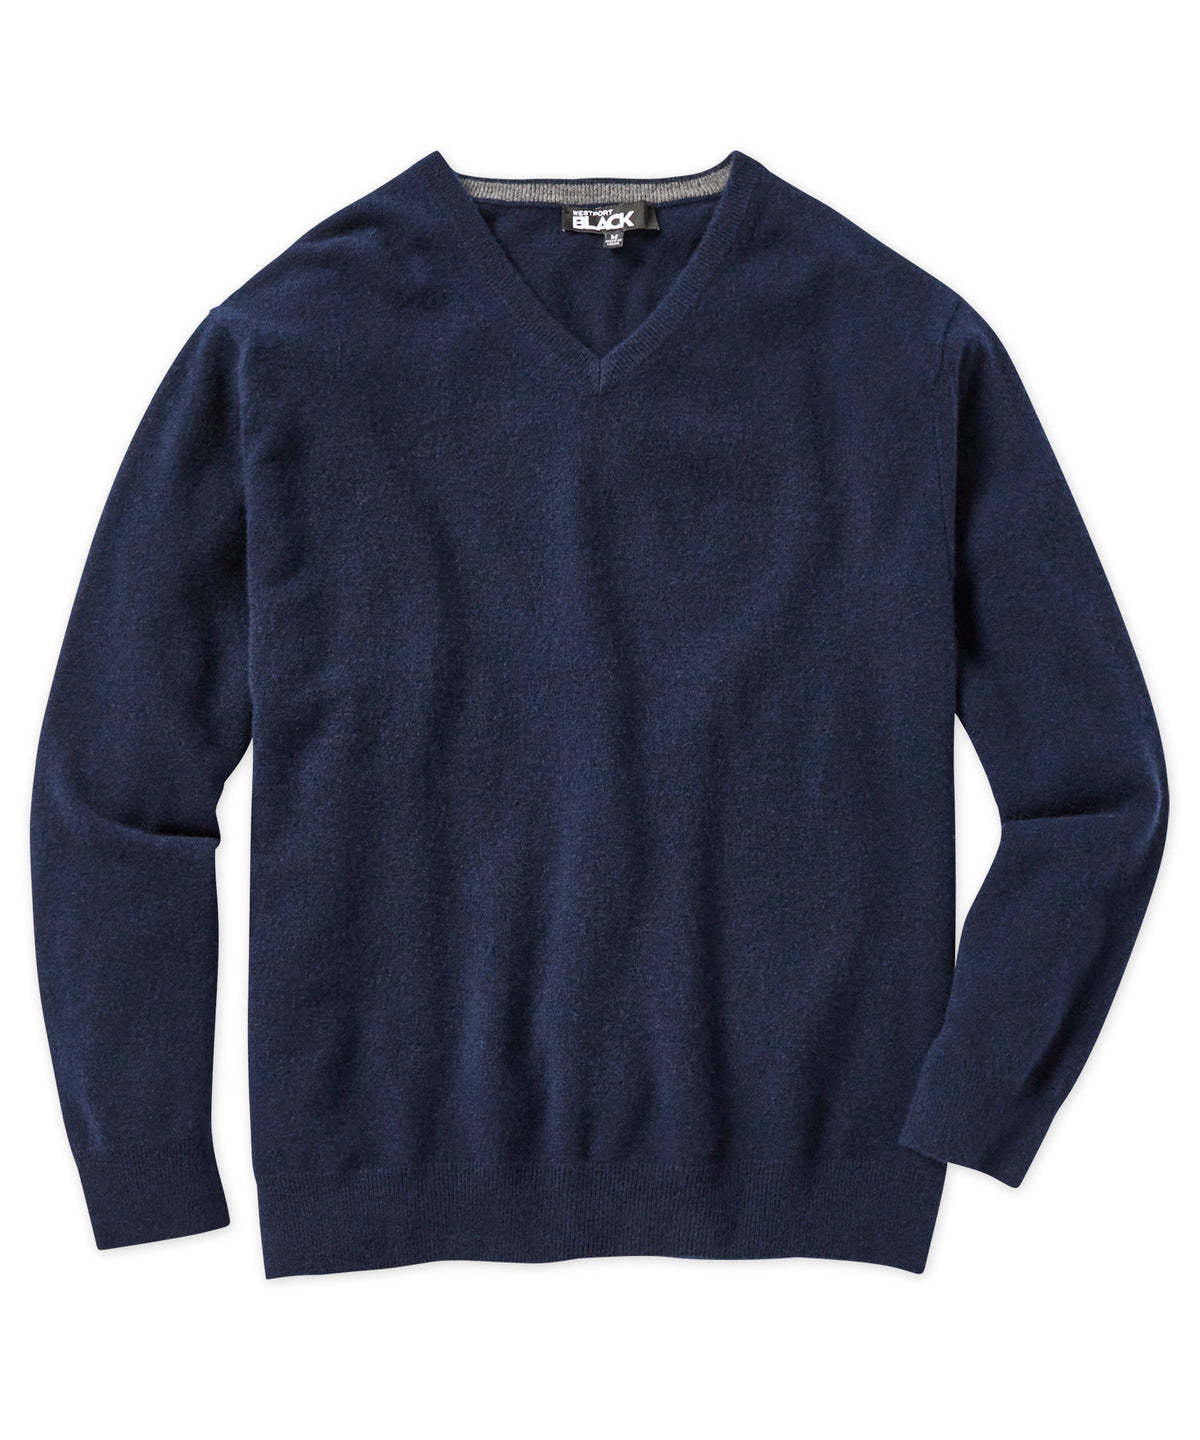 Westport Black Cashmere V-Neck Sweater